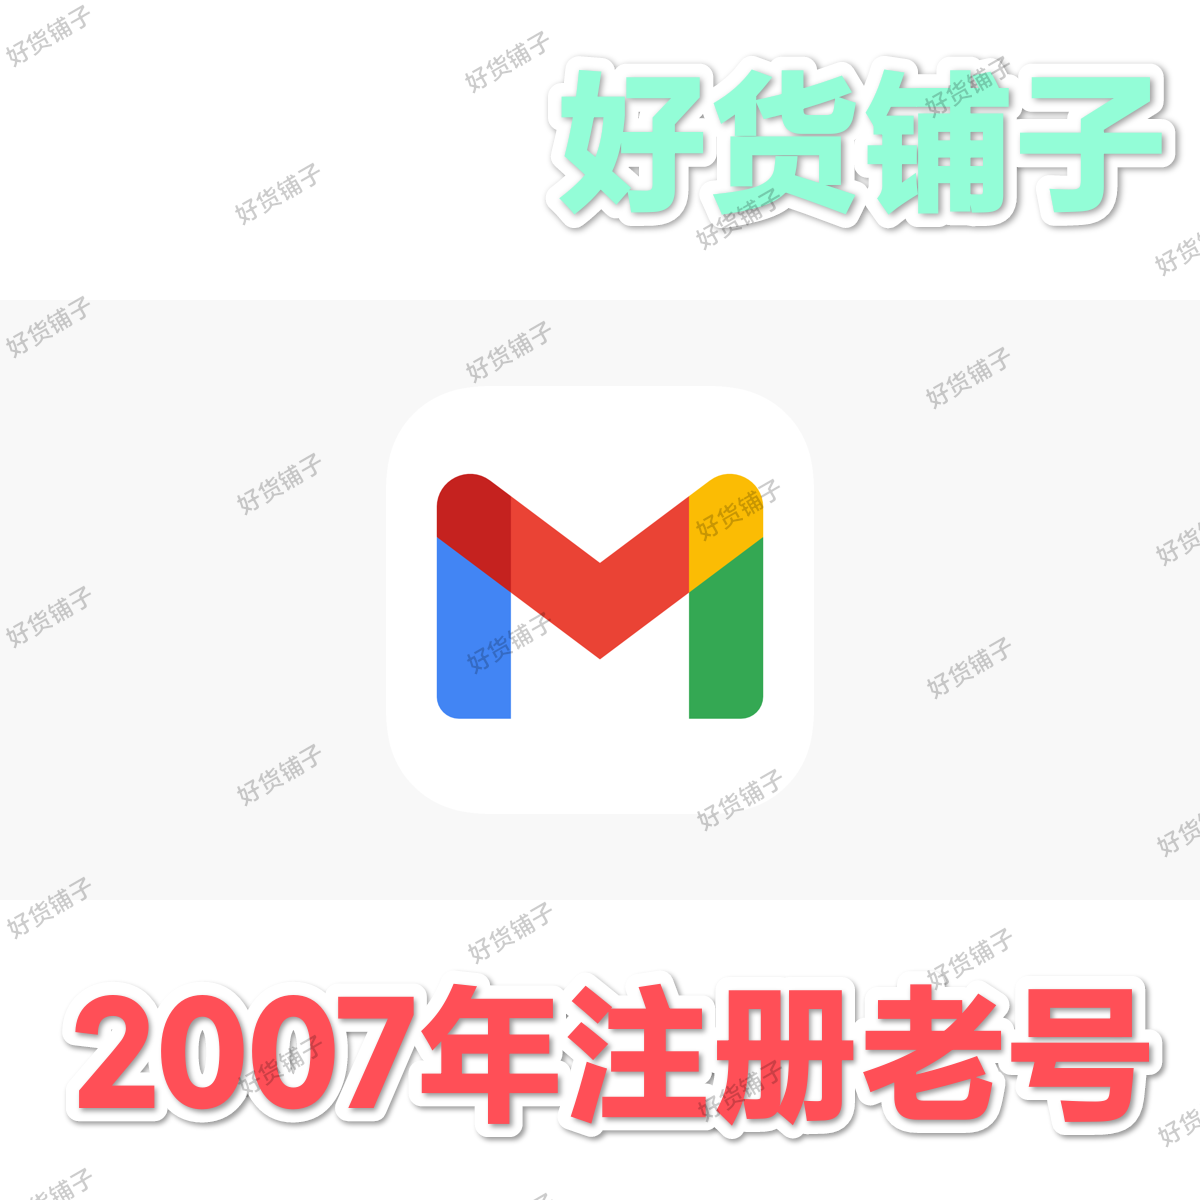 Gmail谷歌账号（2007年注册老号）